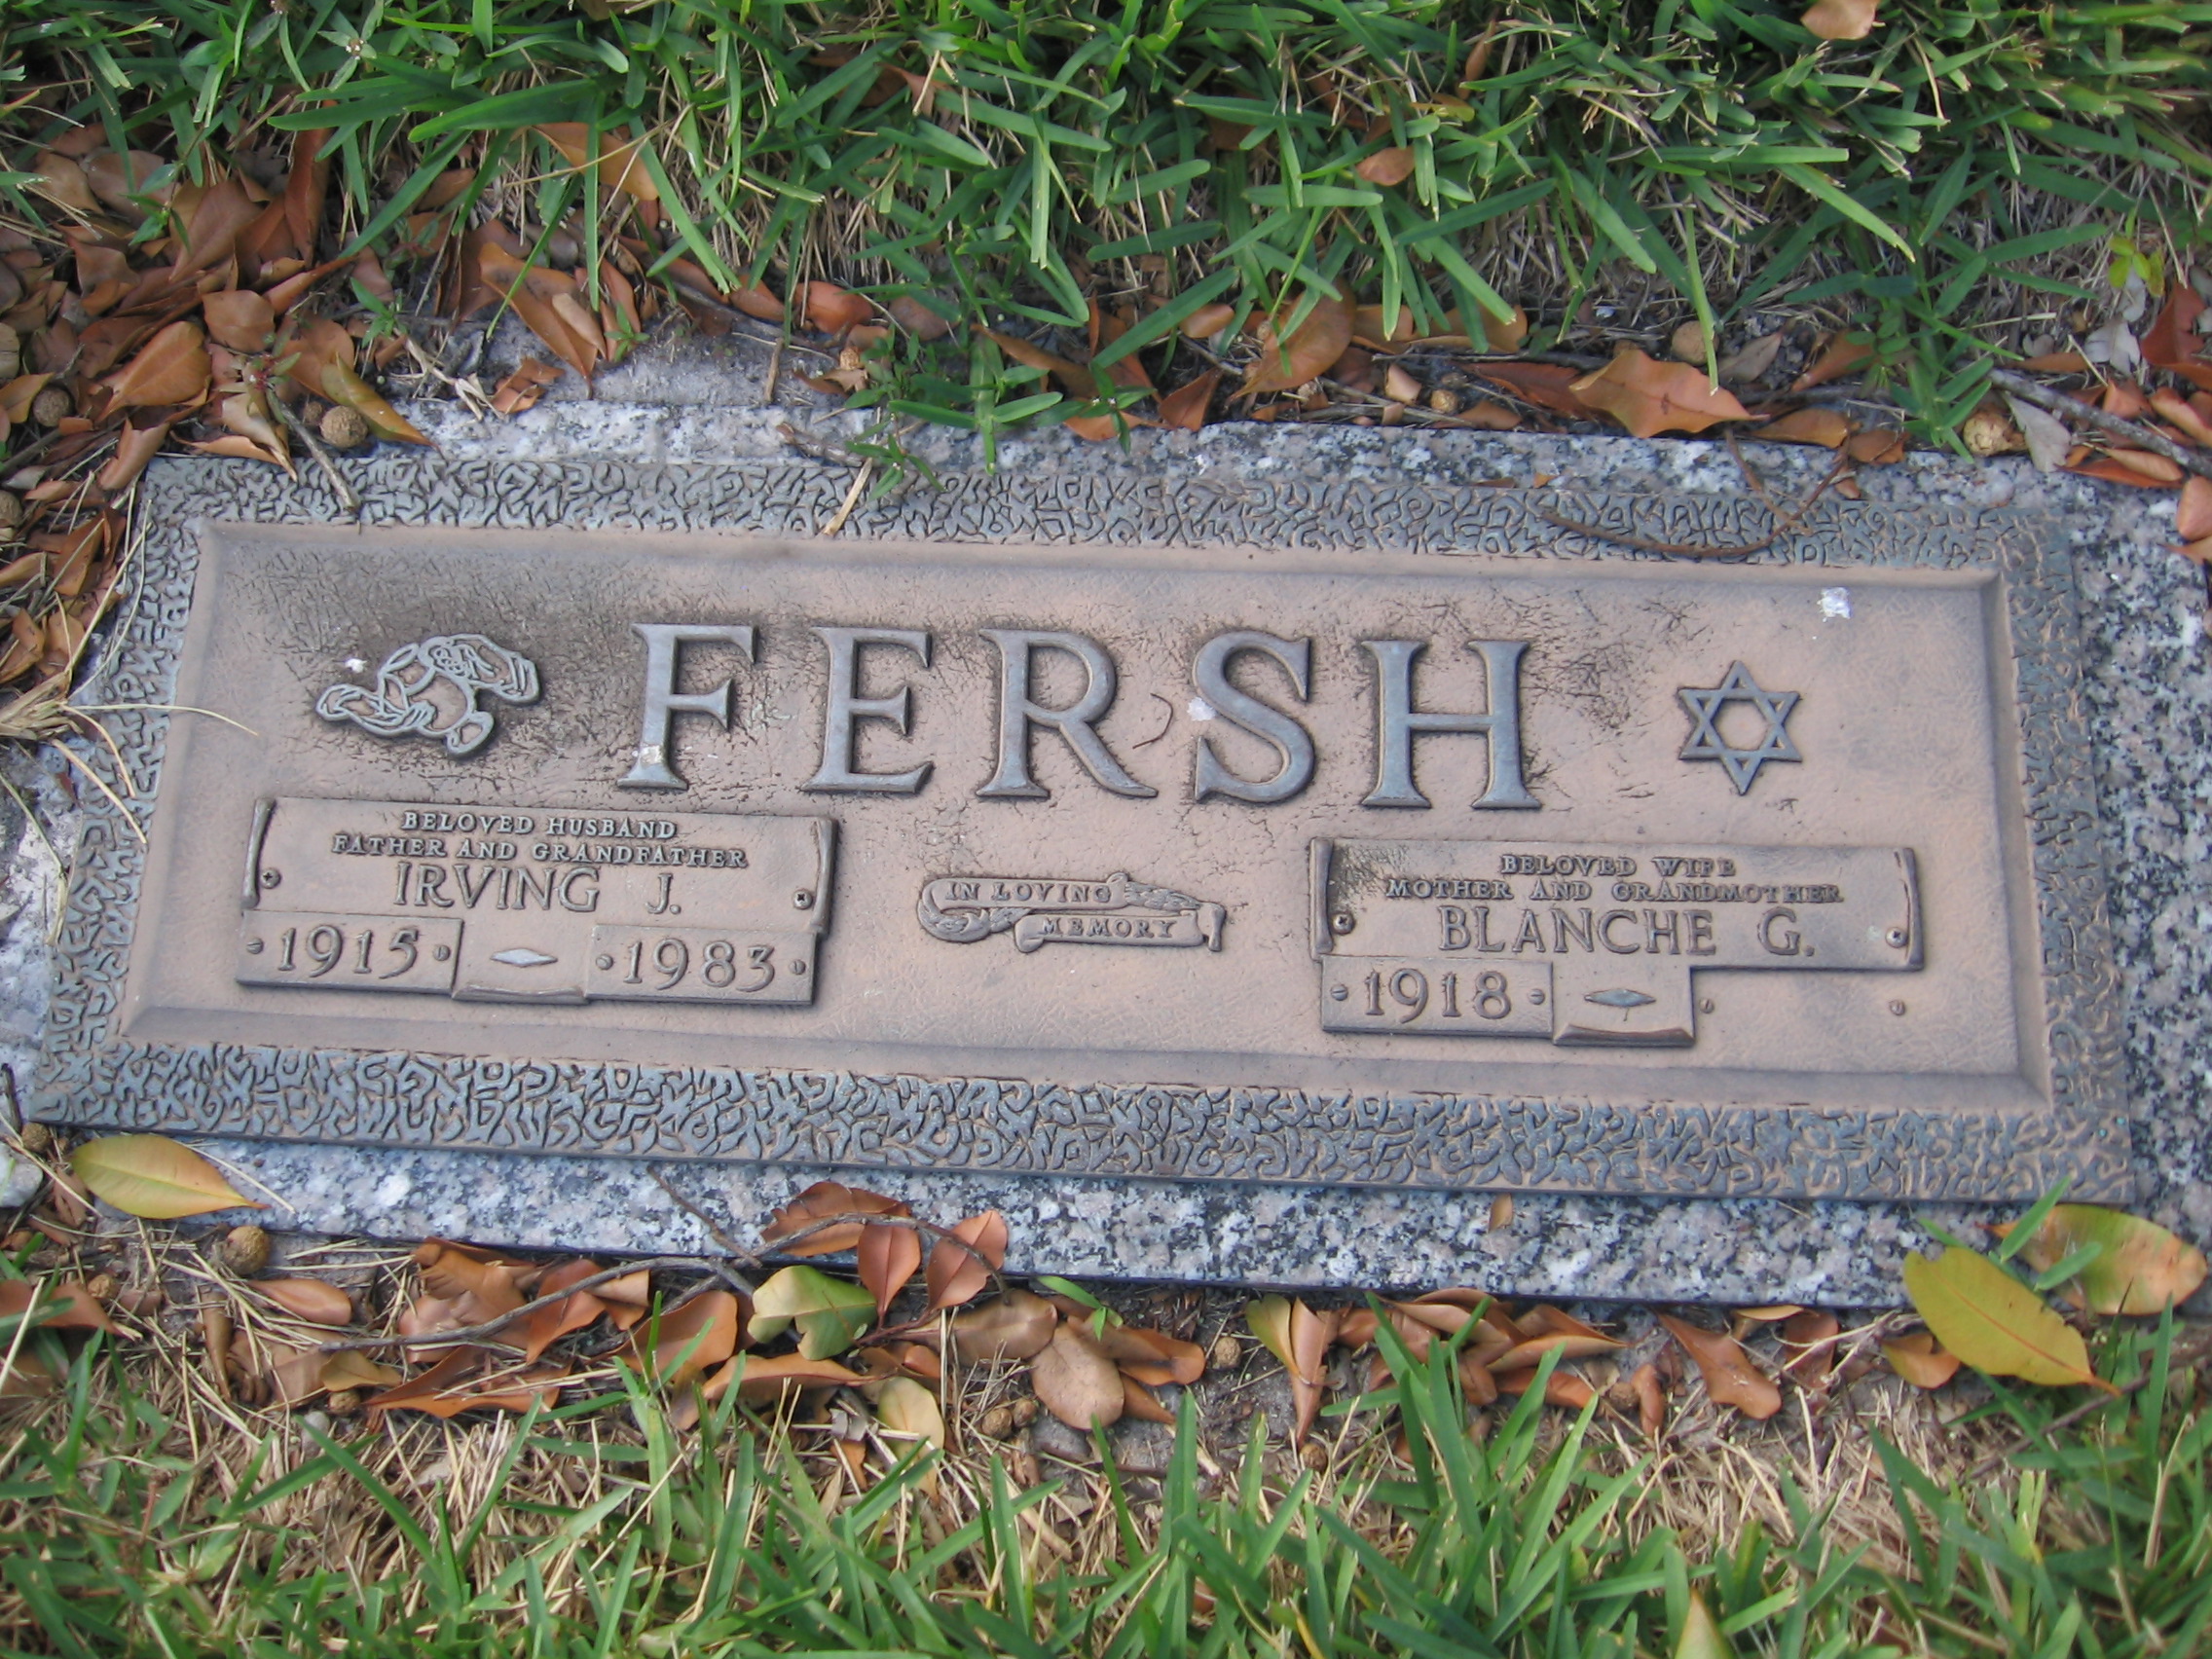 Irving J Fersh